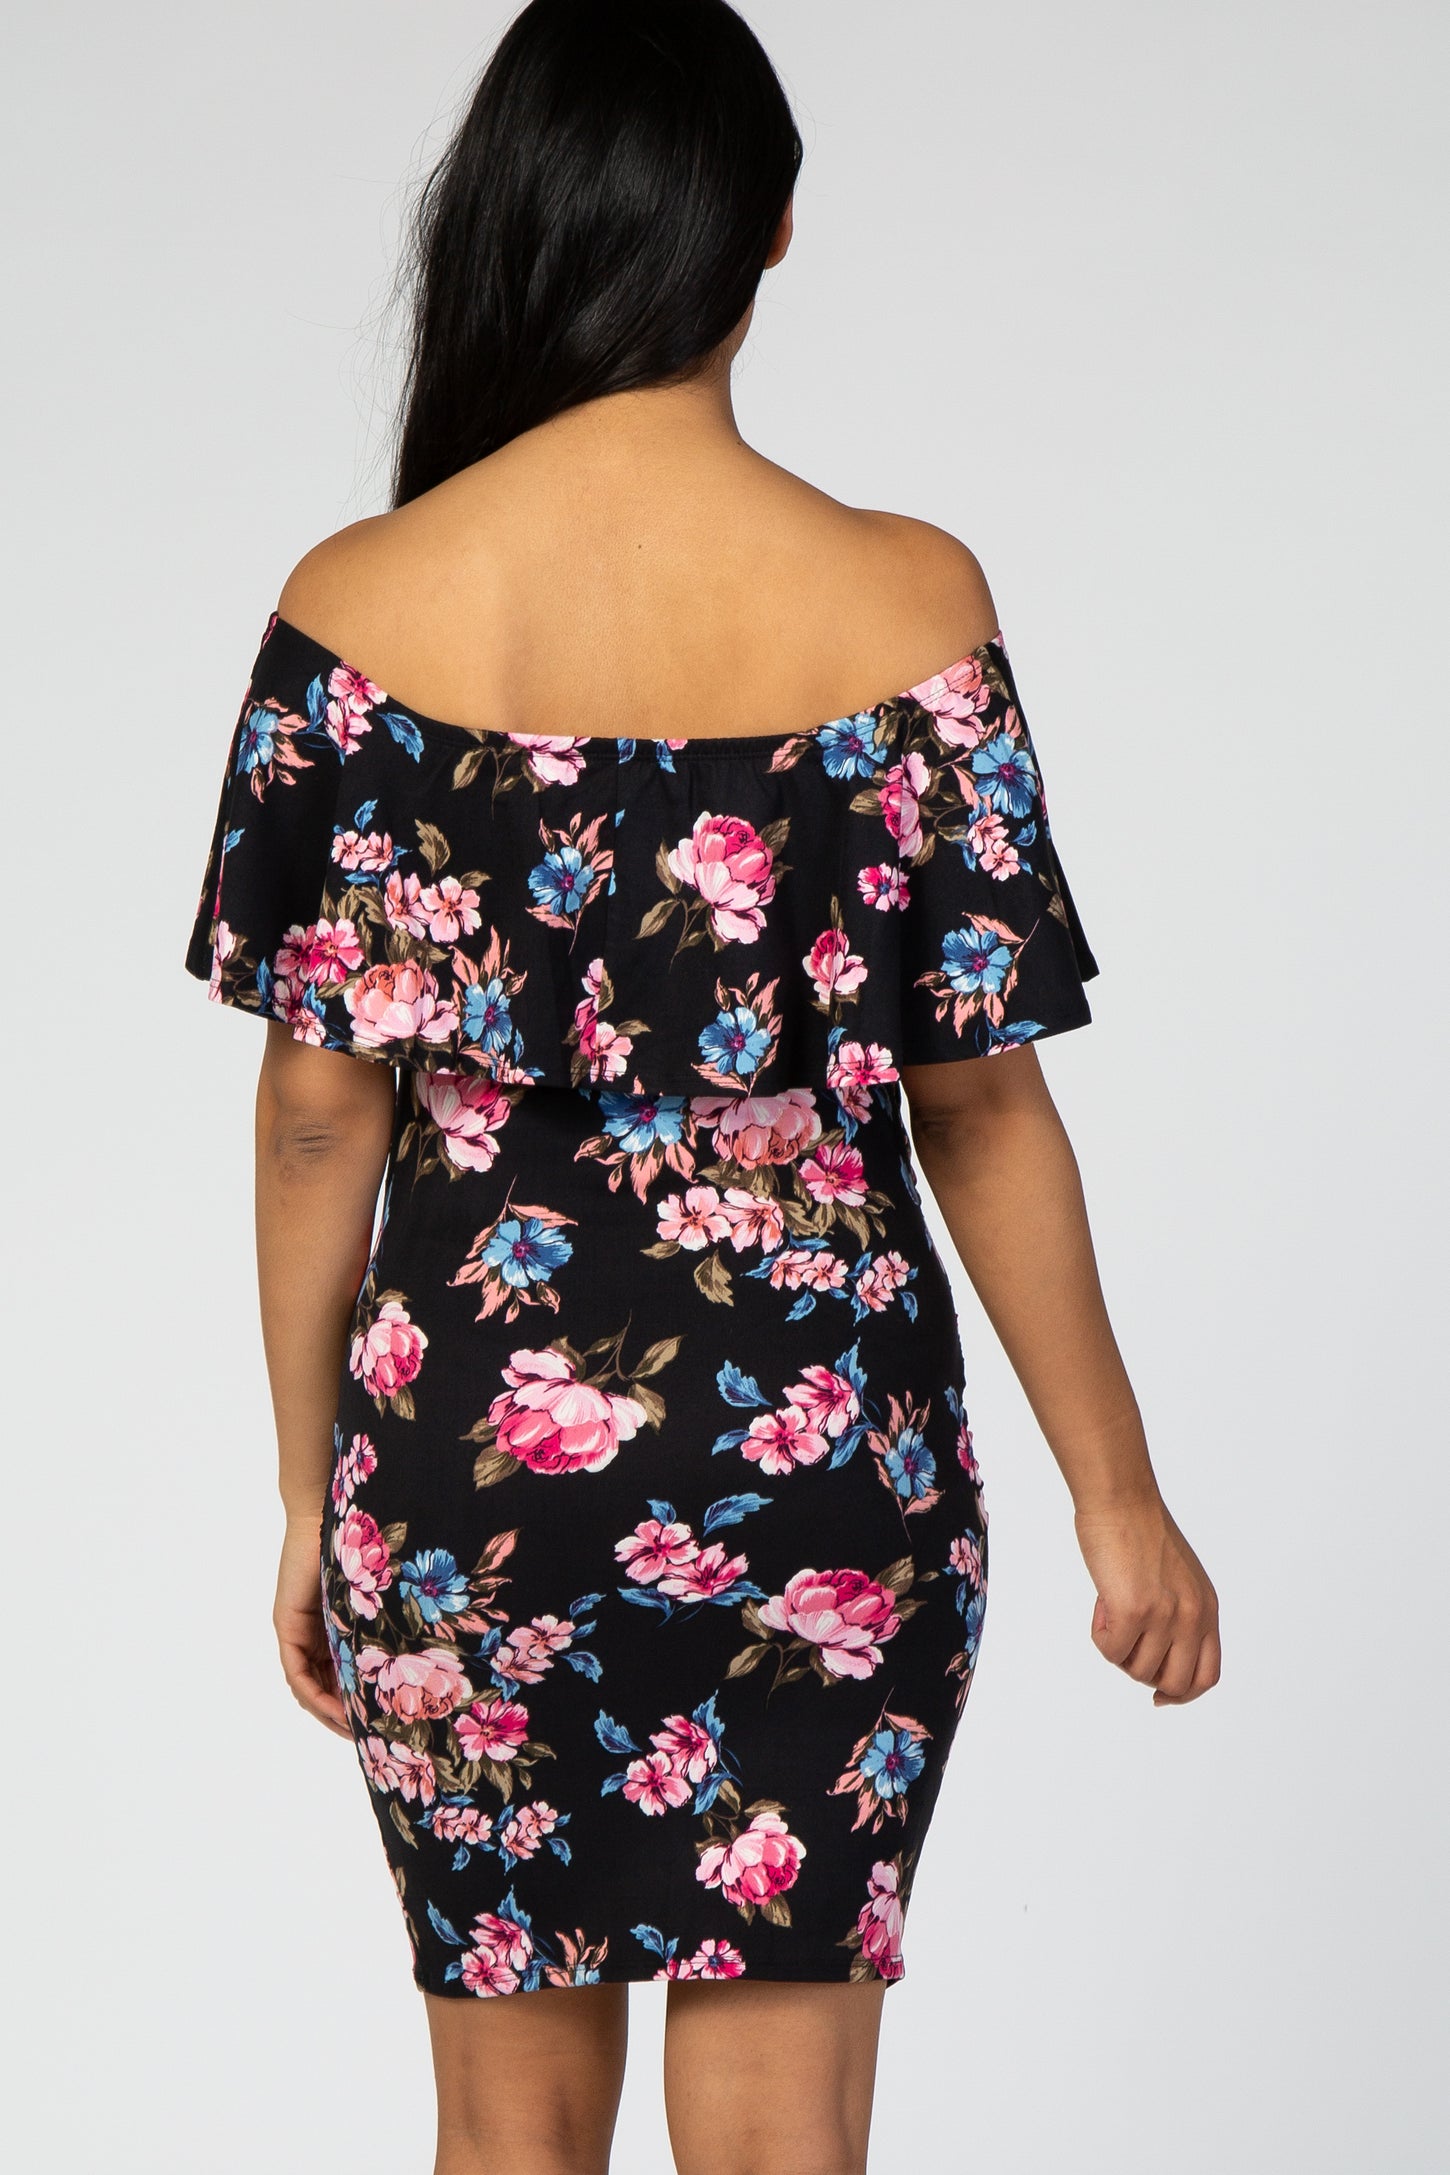 Black Floral Off Shoulder Maternity Dress